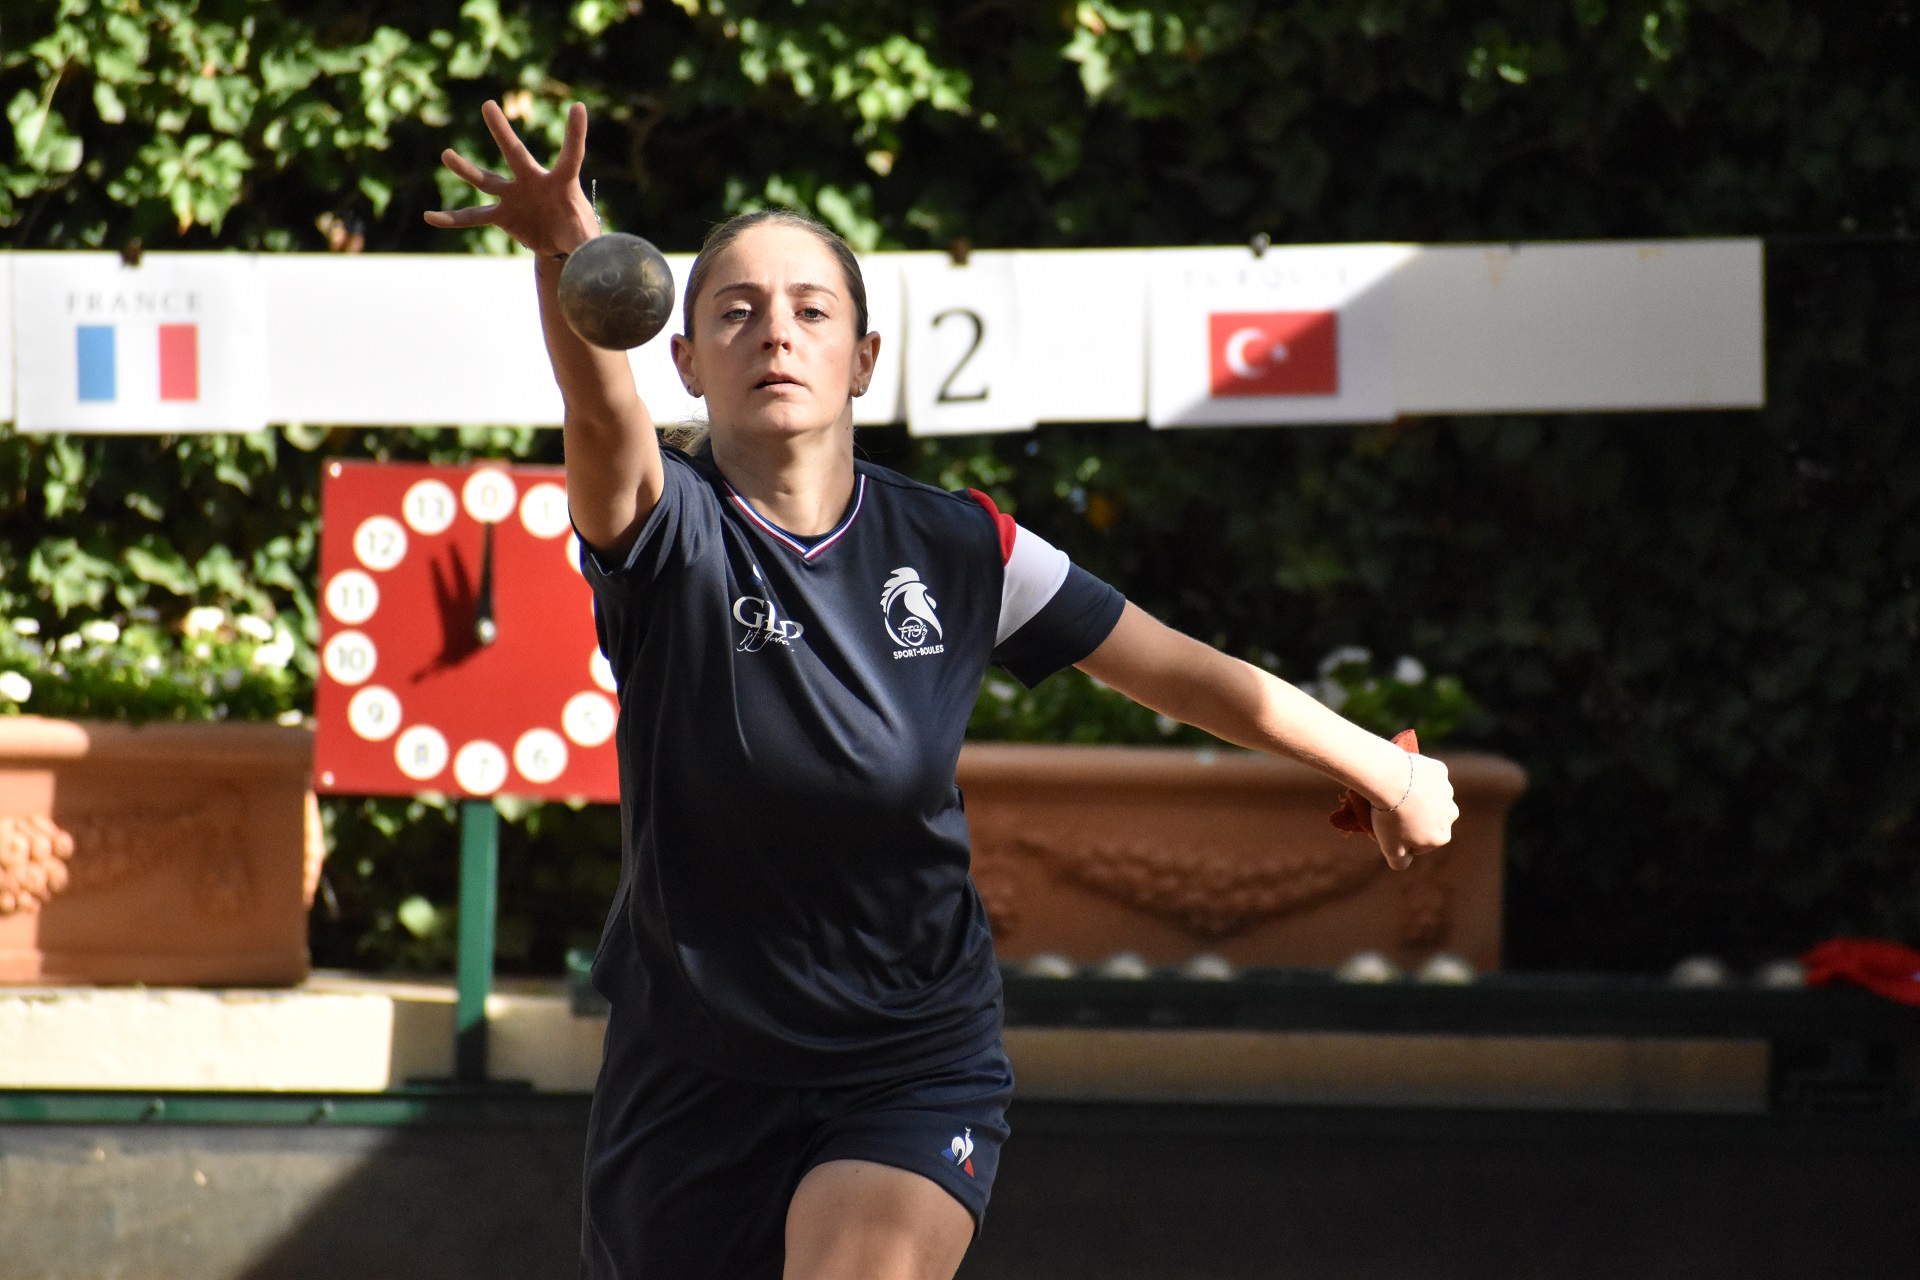 Un succès en double avec Floriane Amar et un record du monde U23 féminin en tir rapide en double avec Ophélie Armanet pour Annaelle Barazutti (photo Loic Poire)